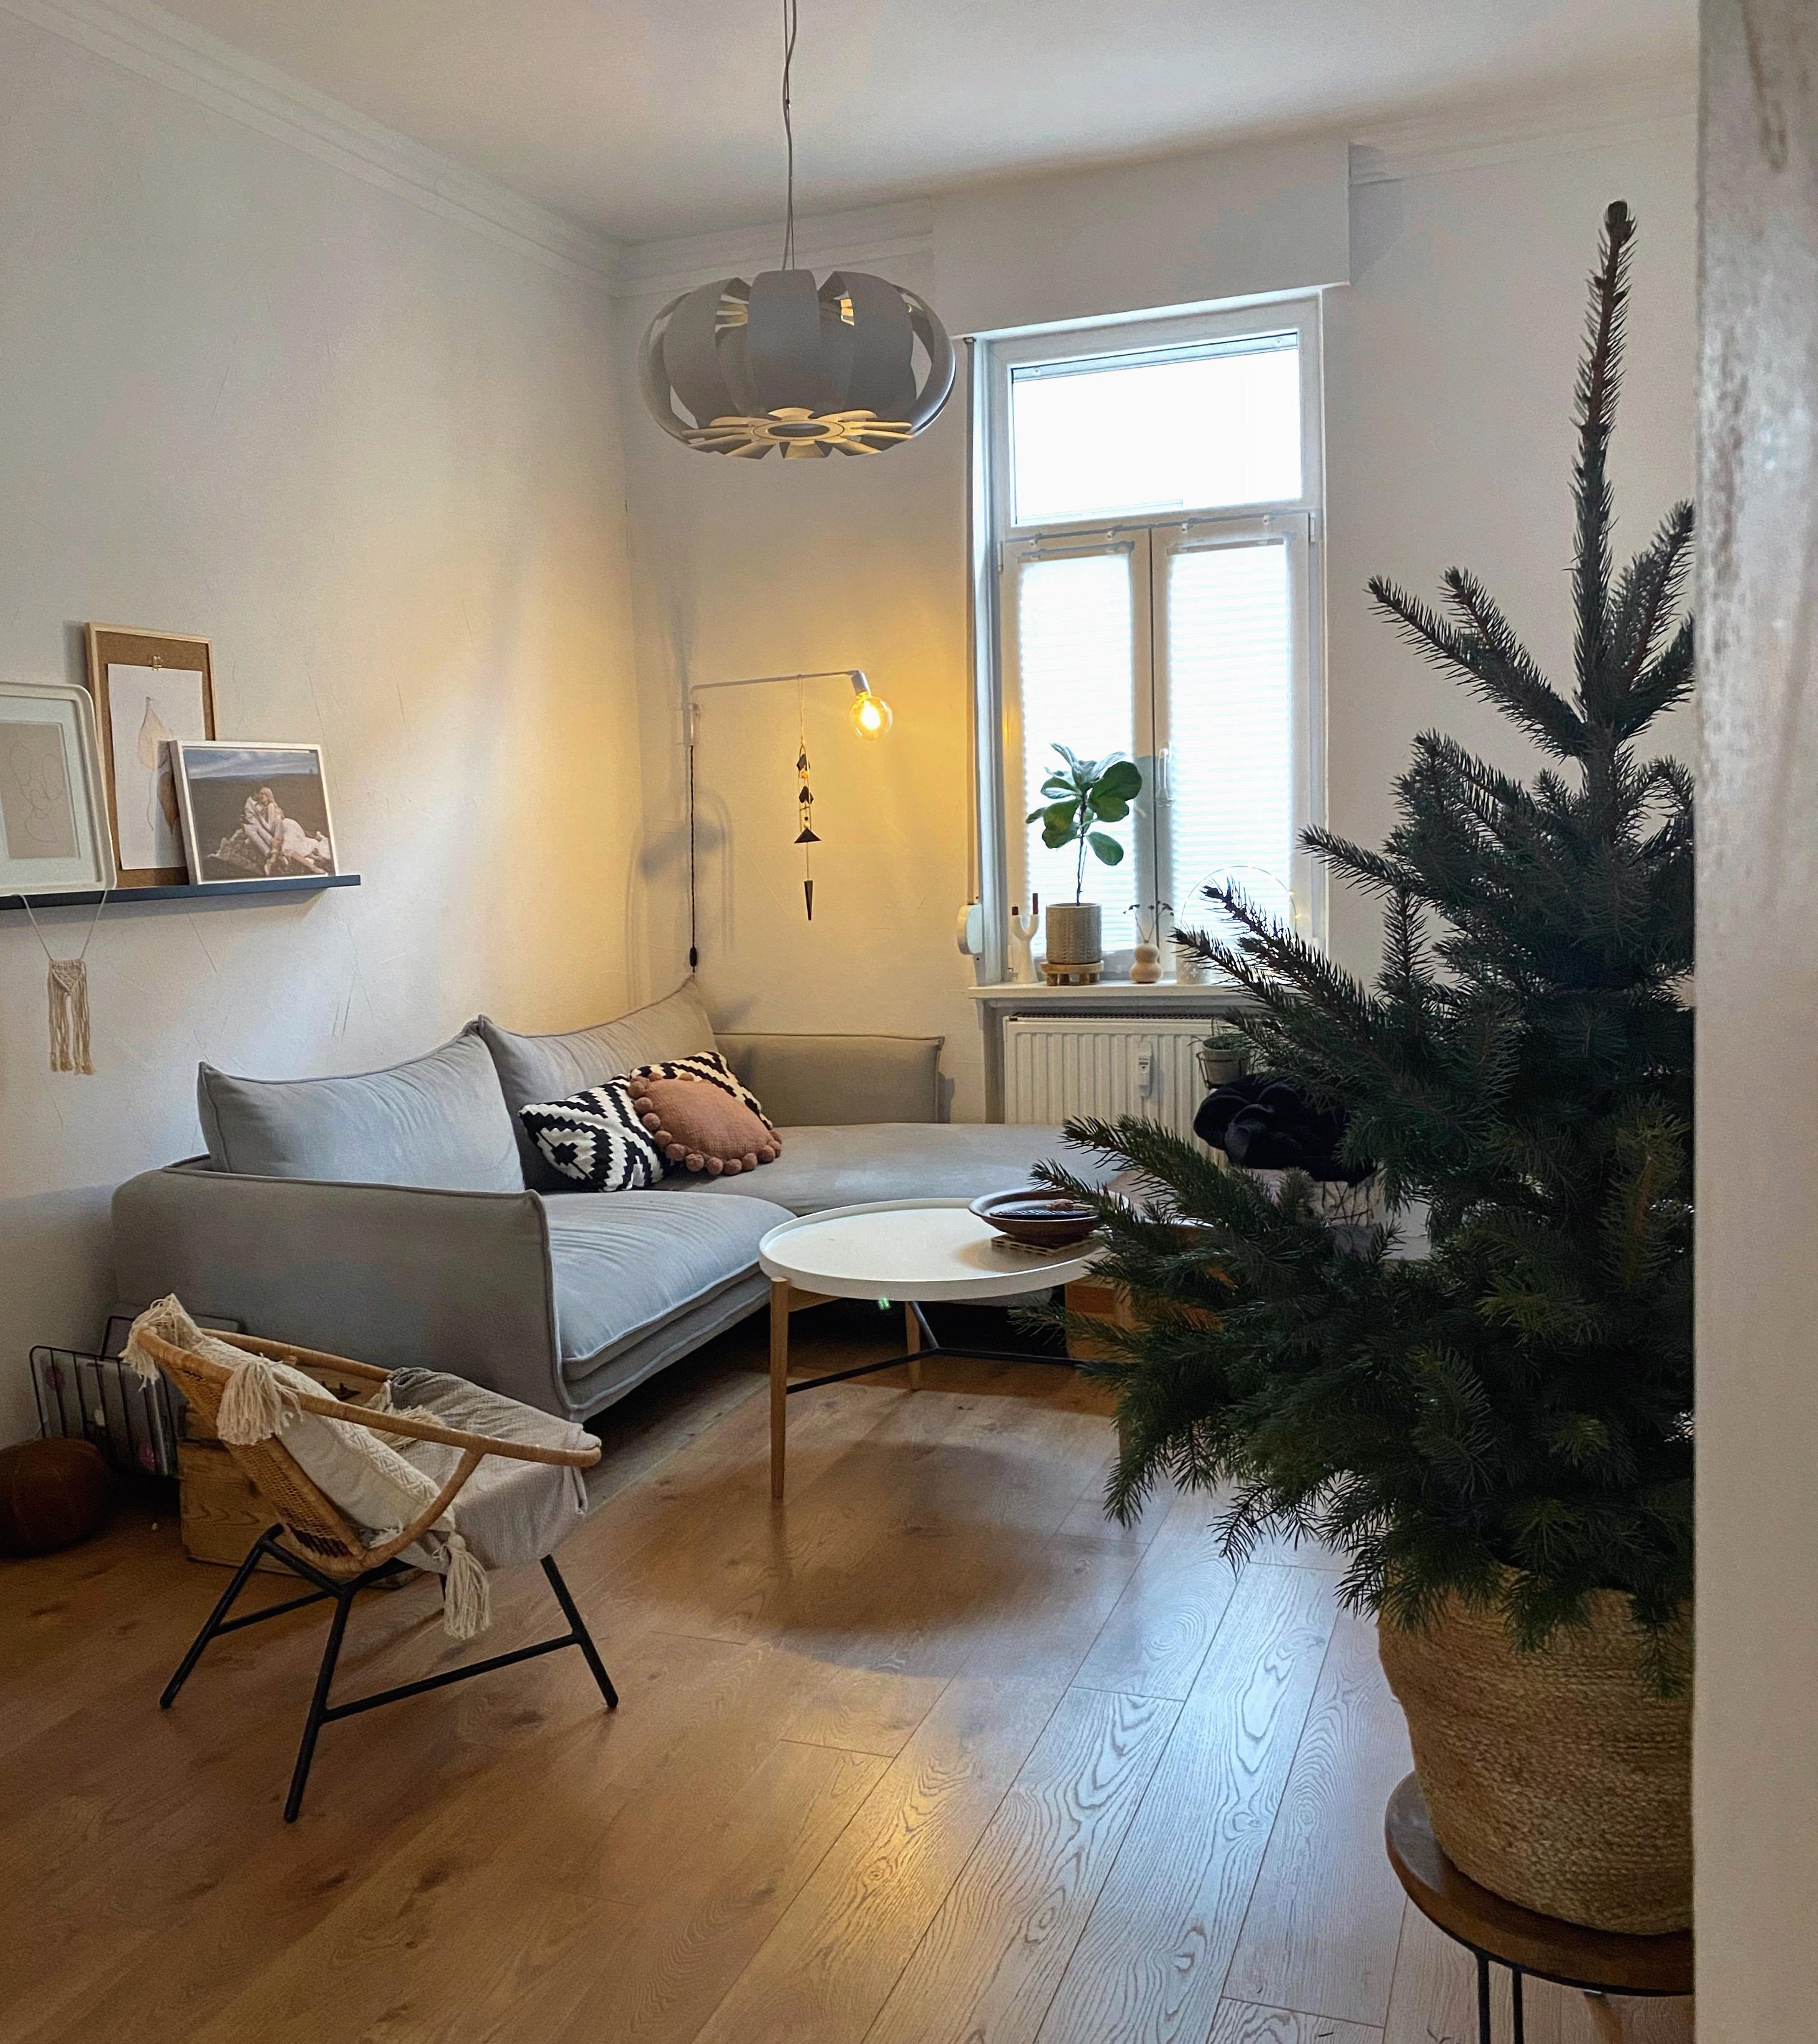 #weihnachtsbaum #tannenbaum #christmastree #weihnachtsdeko #weihnachten #couchmagazin #couchstyle